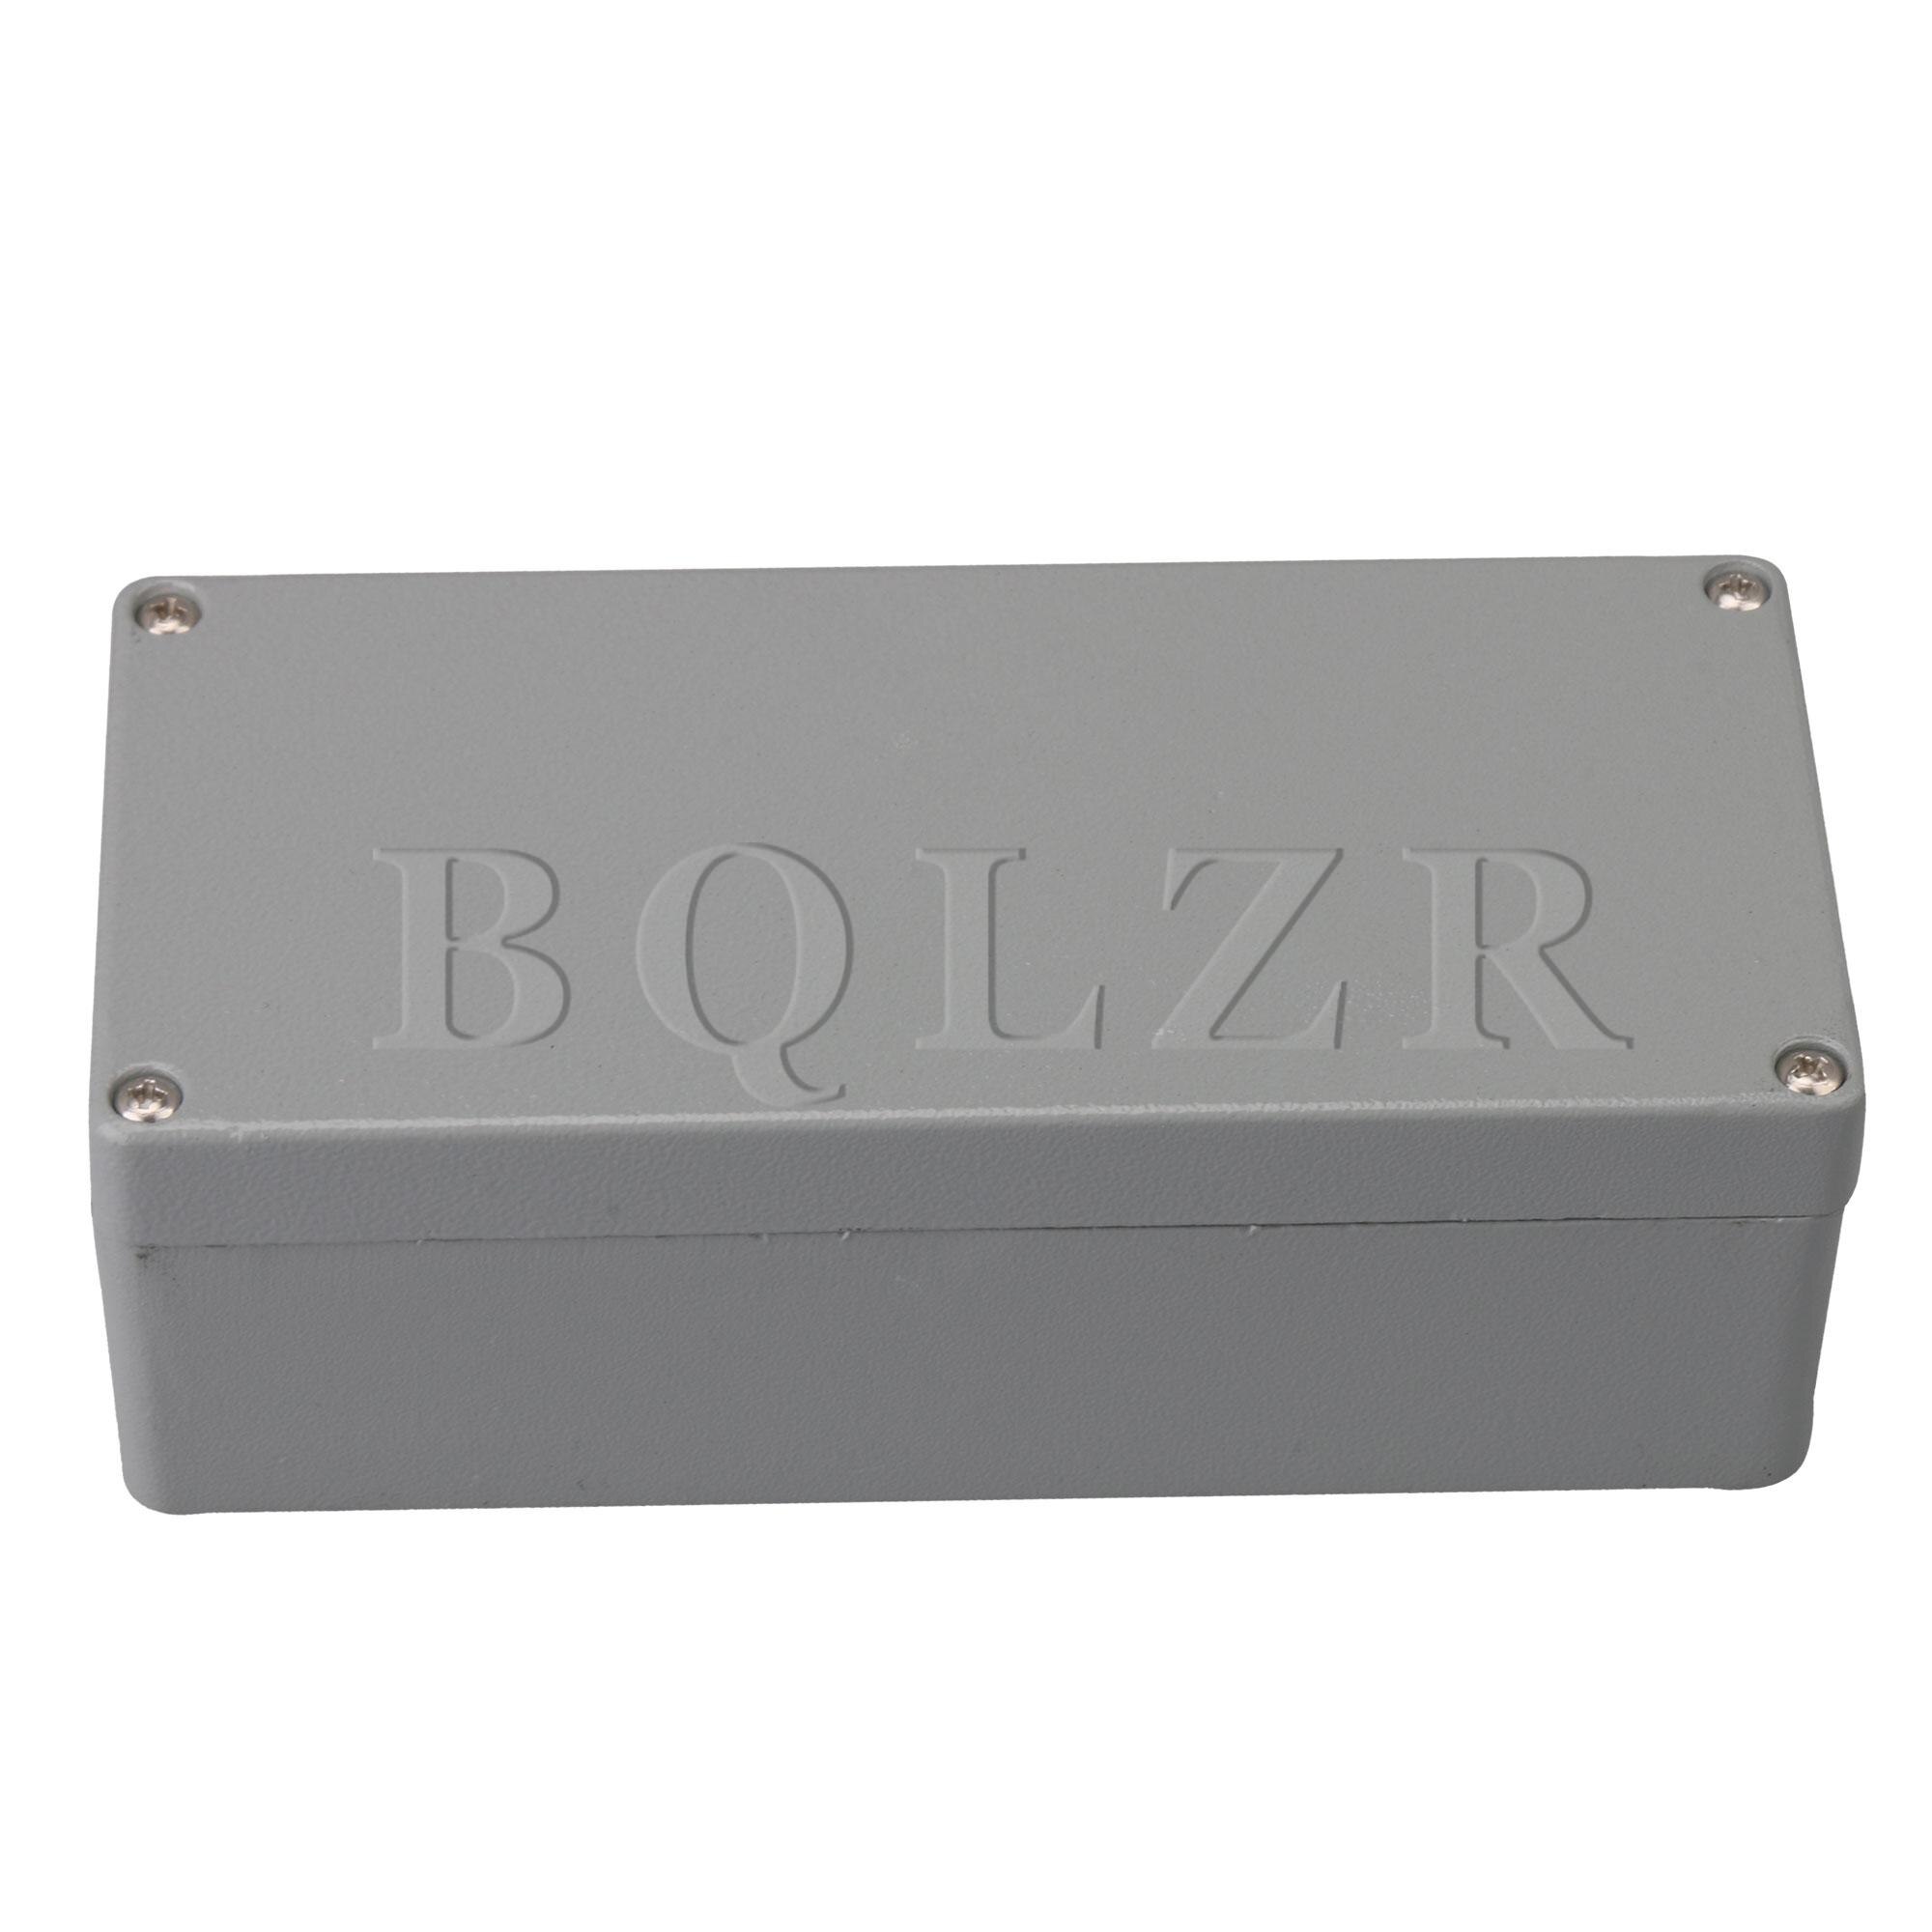 Bqlzr Junction Box IP65 Kabel Aansluiting Diy Case Behuizing Grijs 17.3x8x6cm